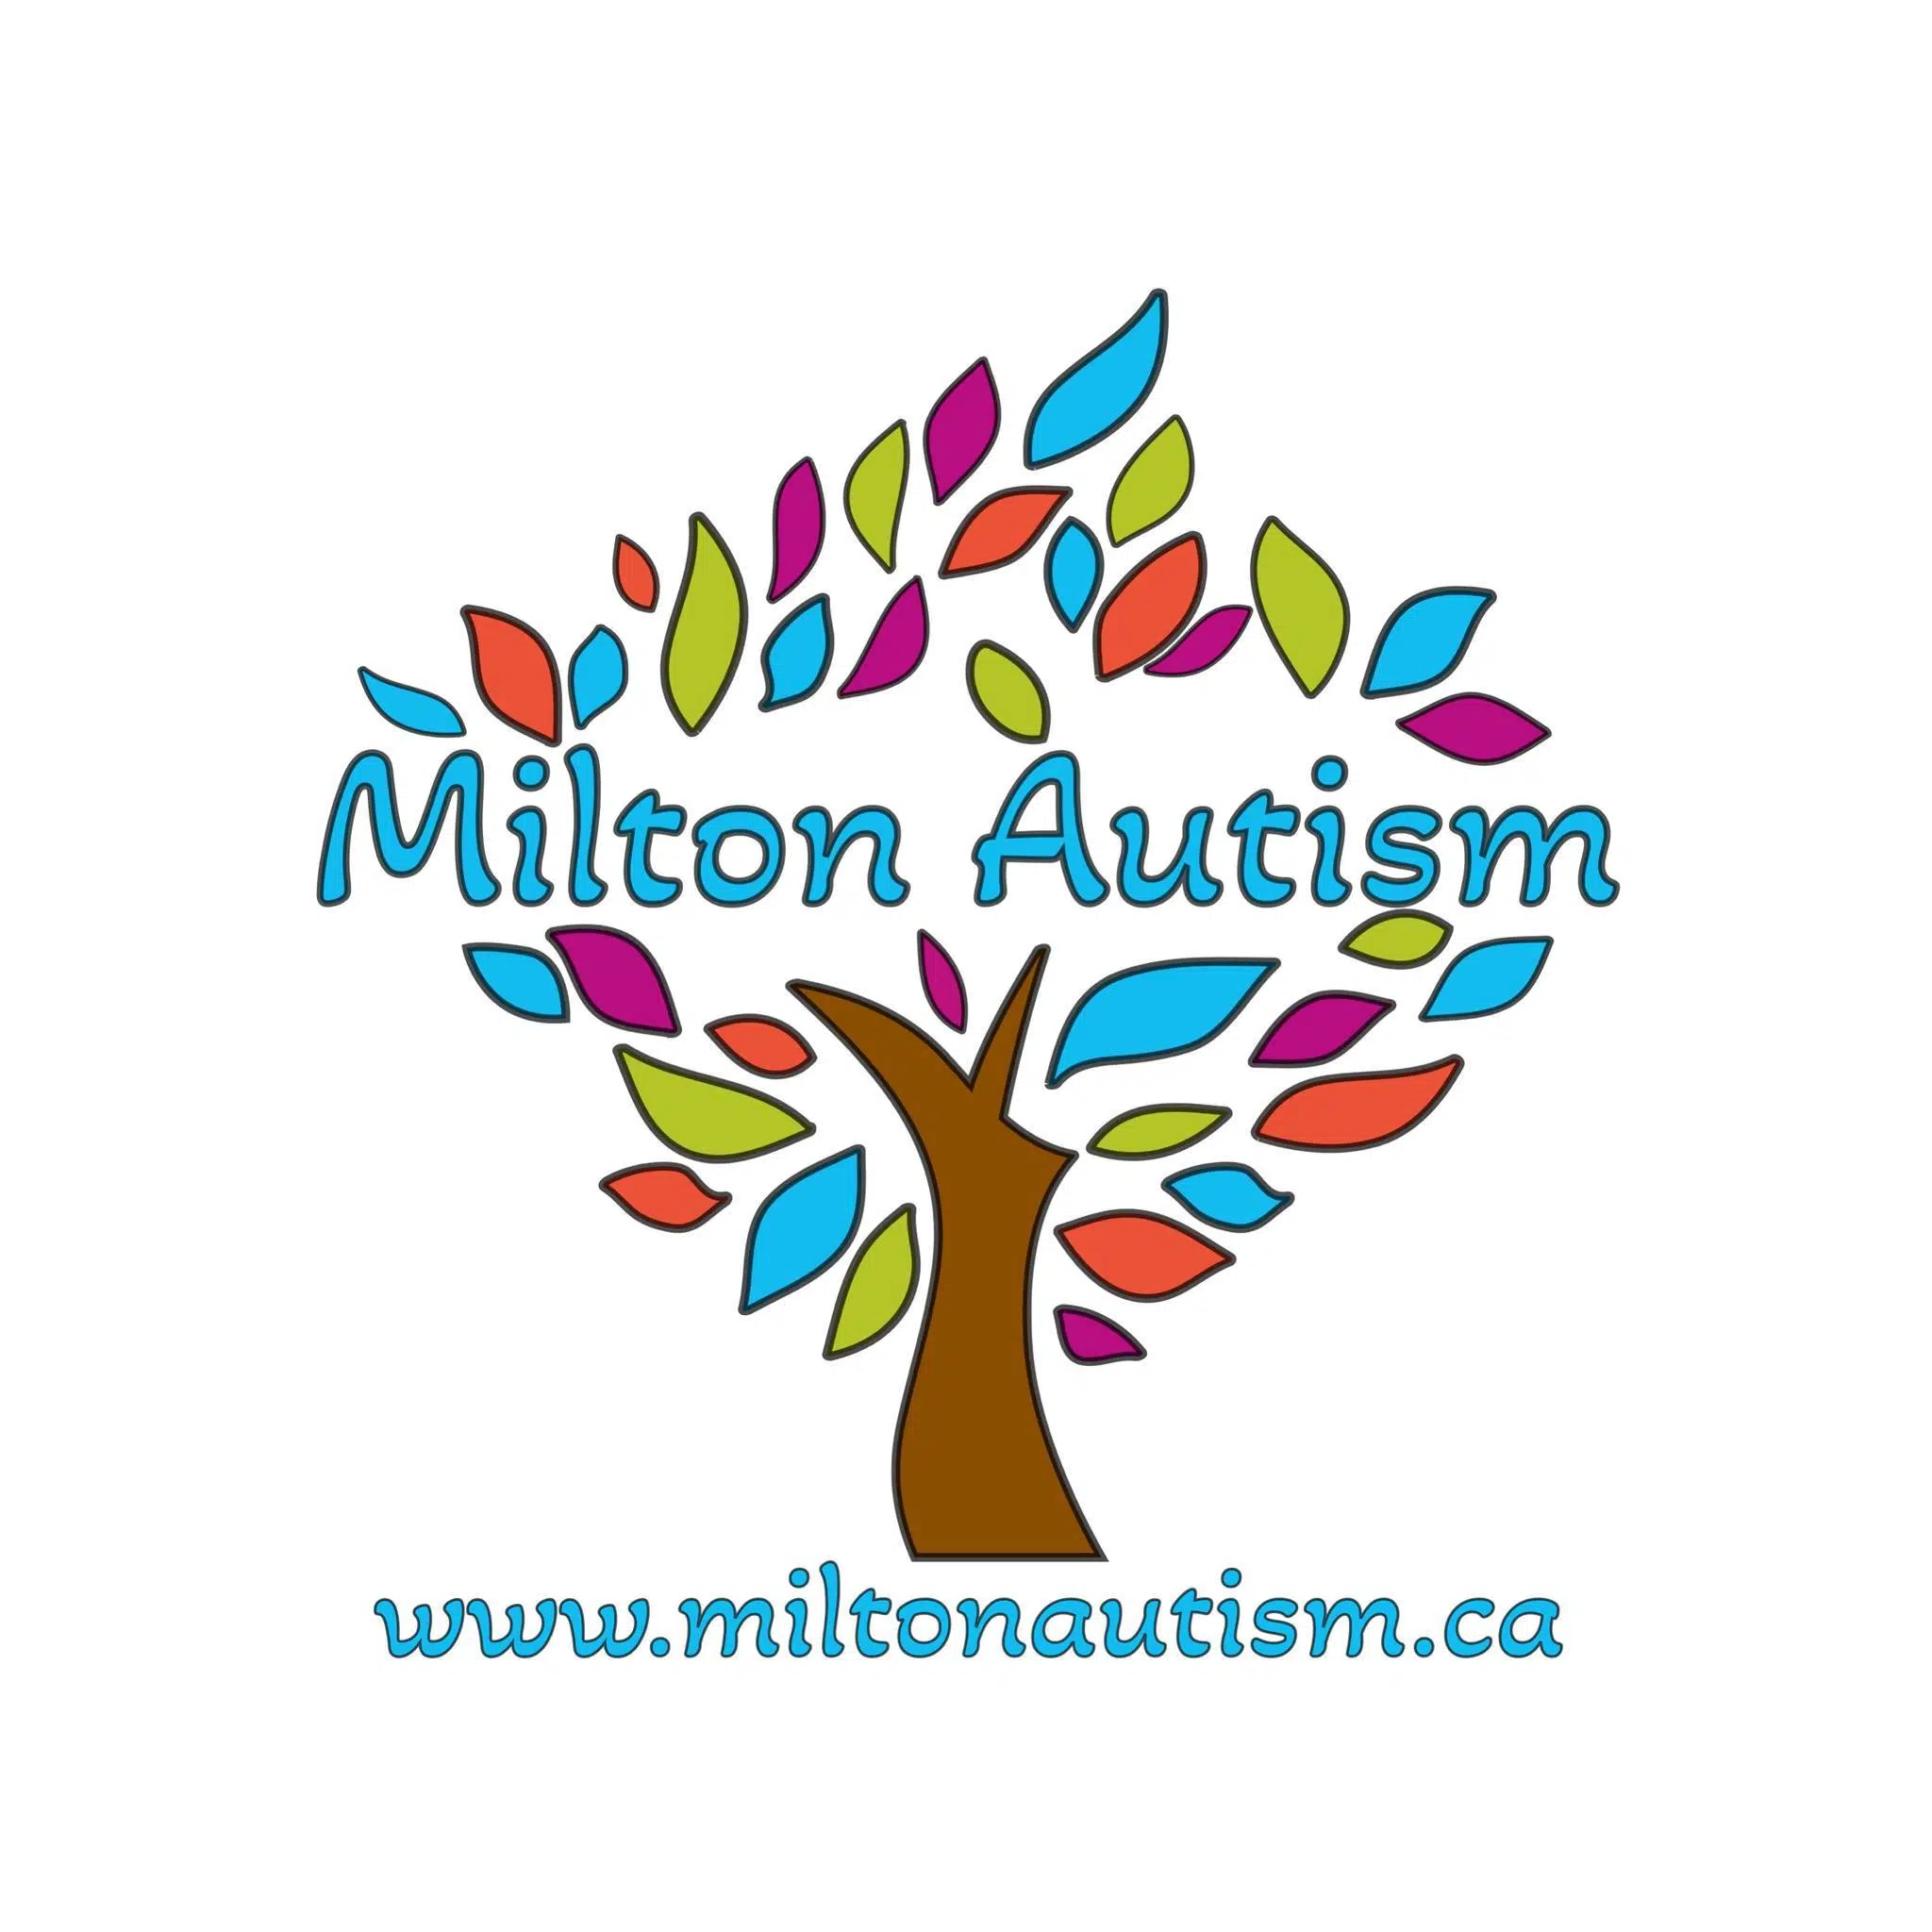 Join Milton Autism's Lattes & Listen event tomorrow